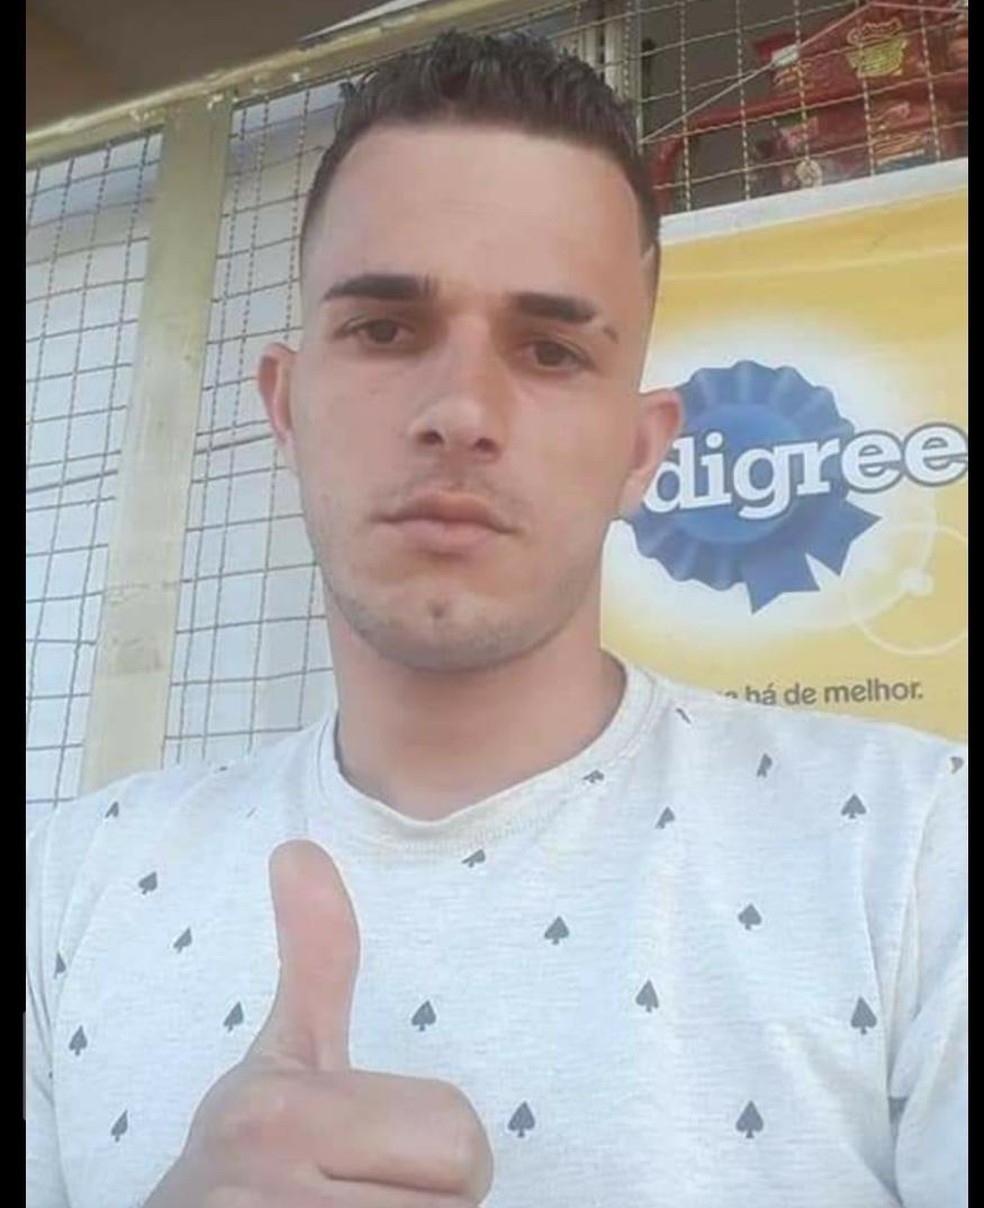 Jean Carlos Assis, de 23 anos, foi morto à tiros no bairro Nova Suiça, em BH, durante compra de TV. — Foto: Arquivo pessoal